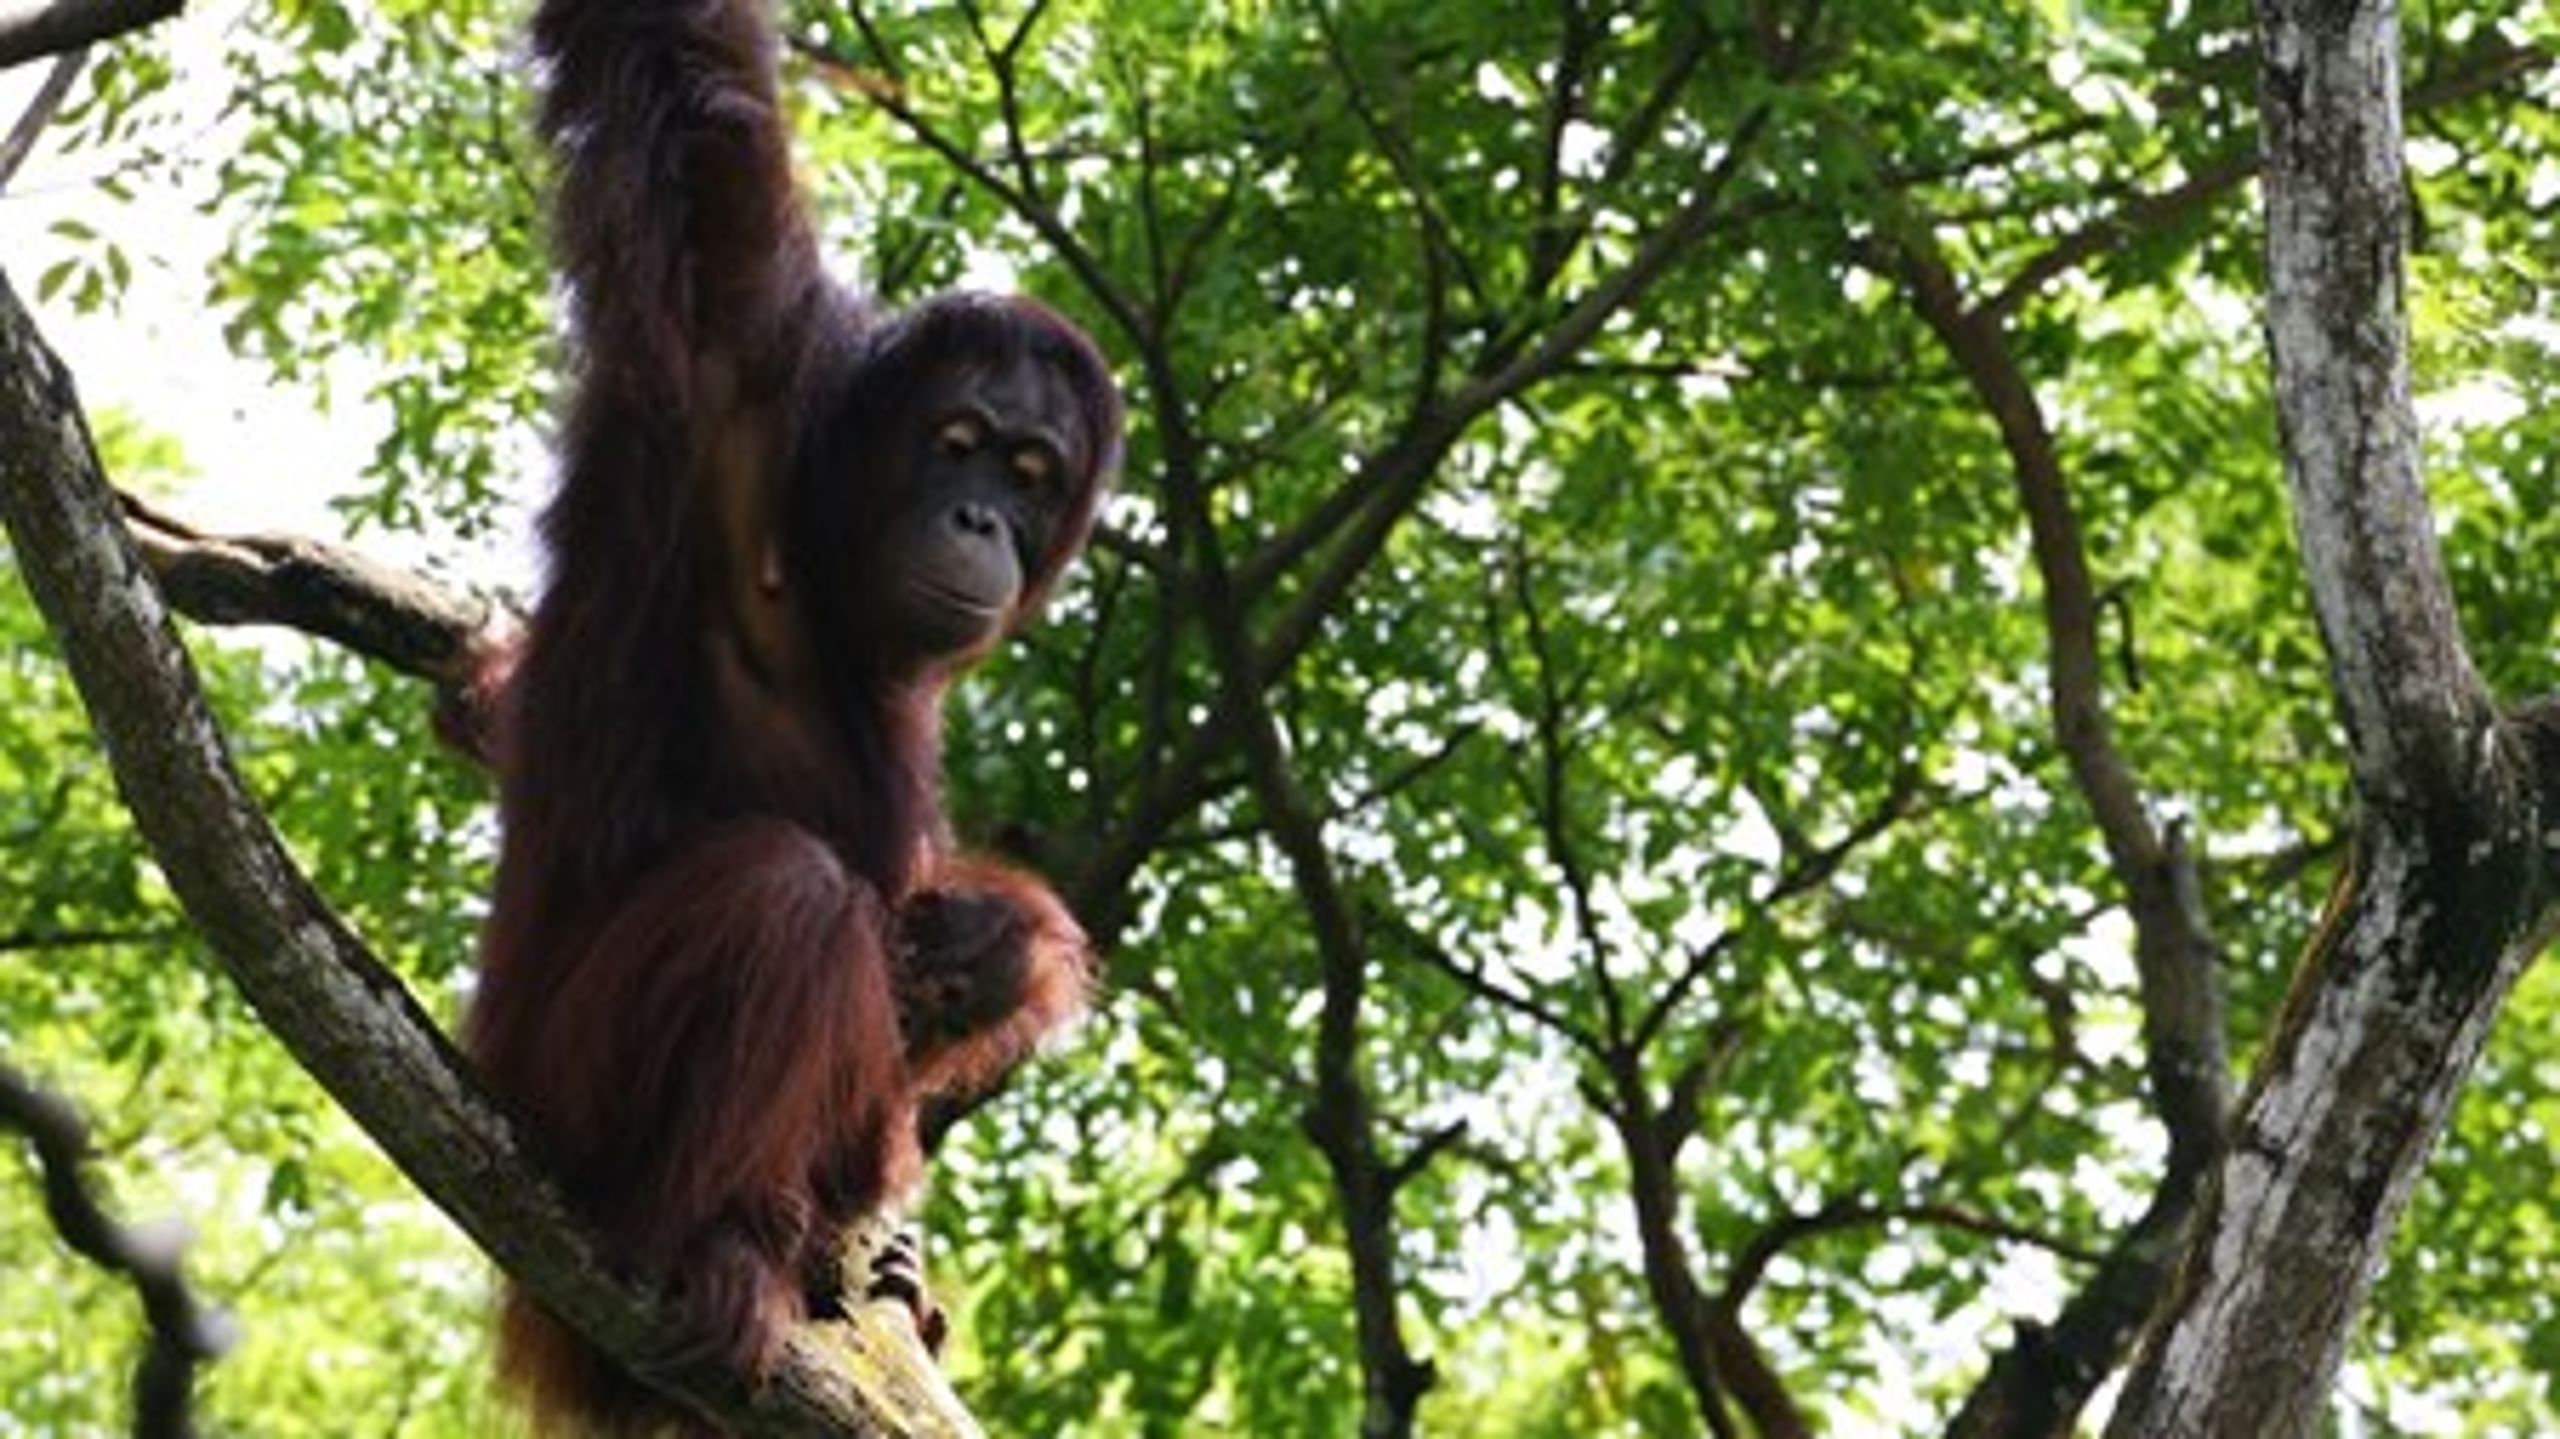 I anledning af FN’s internationale dag for biologisk mangfoldighed sætter Bue Bejer Heckmann fra Red Orangutangen fokus på, hvordan vores levestil påvirker vores omgivelser.